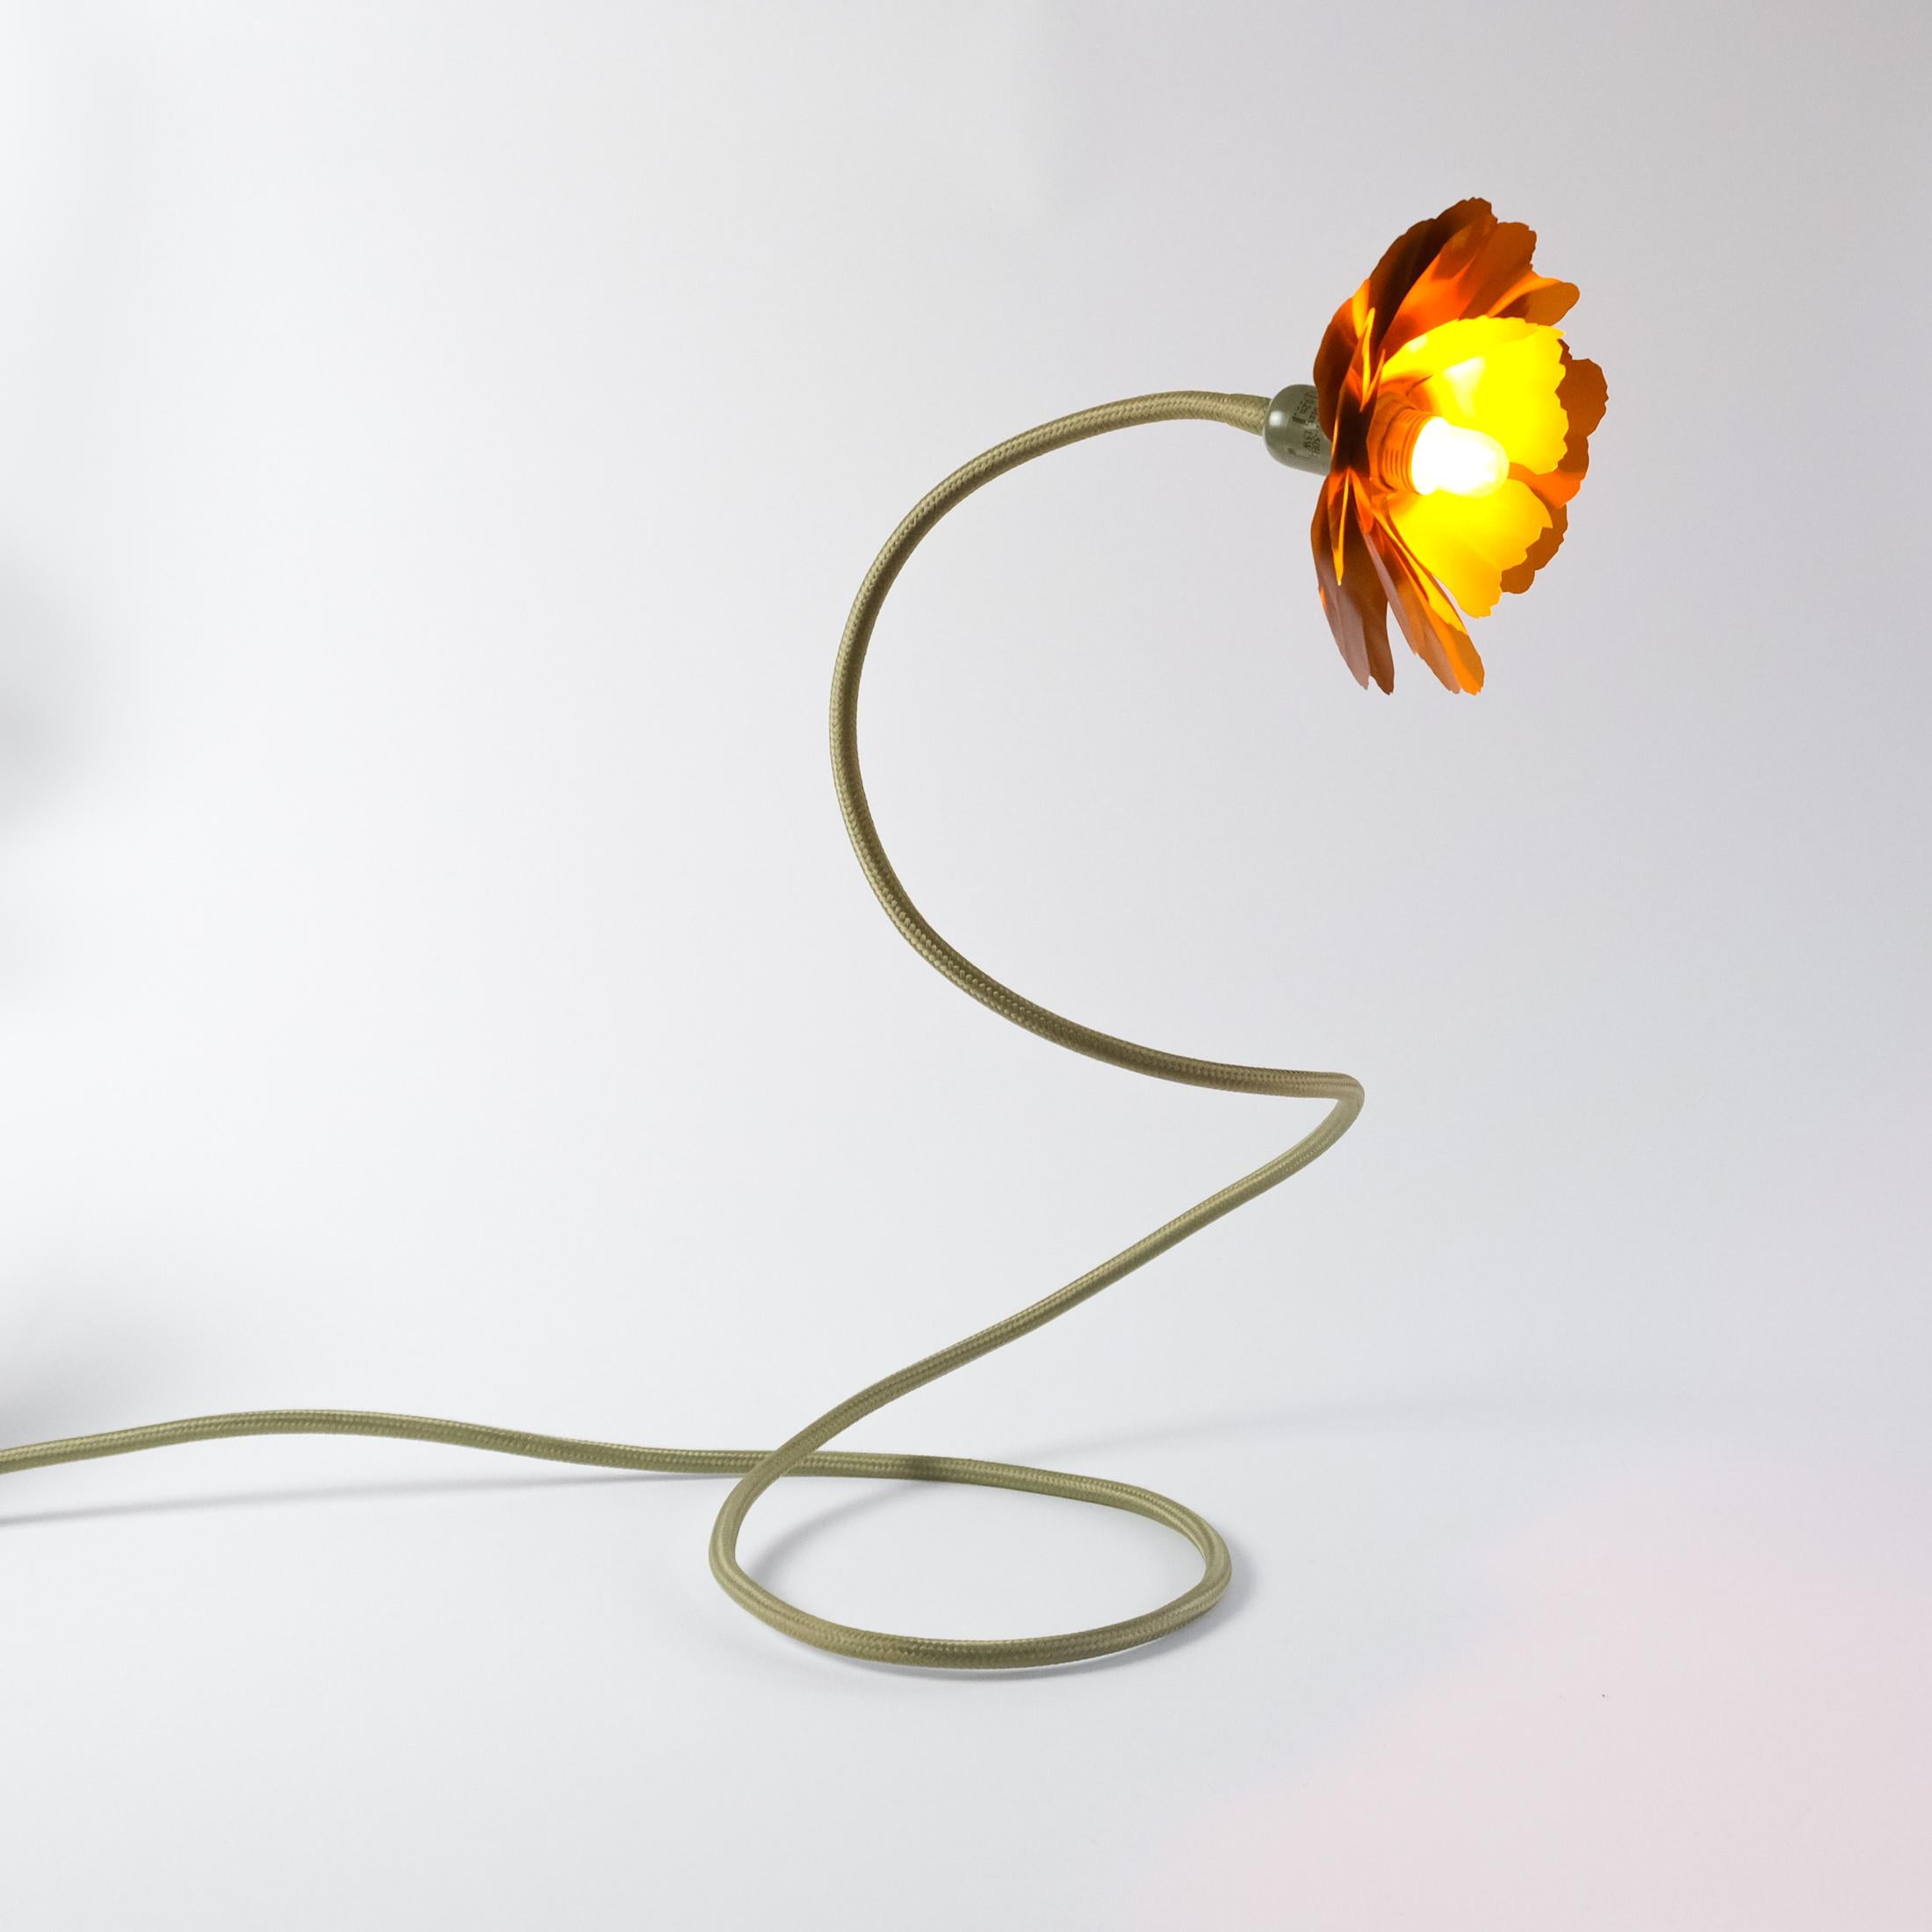 Helena Christensen's Flexible Flower Lamp for Habitat “V.I.P” Collection, 2004 For Sale 3